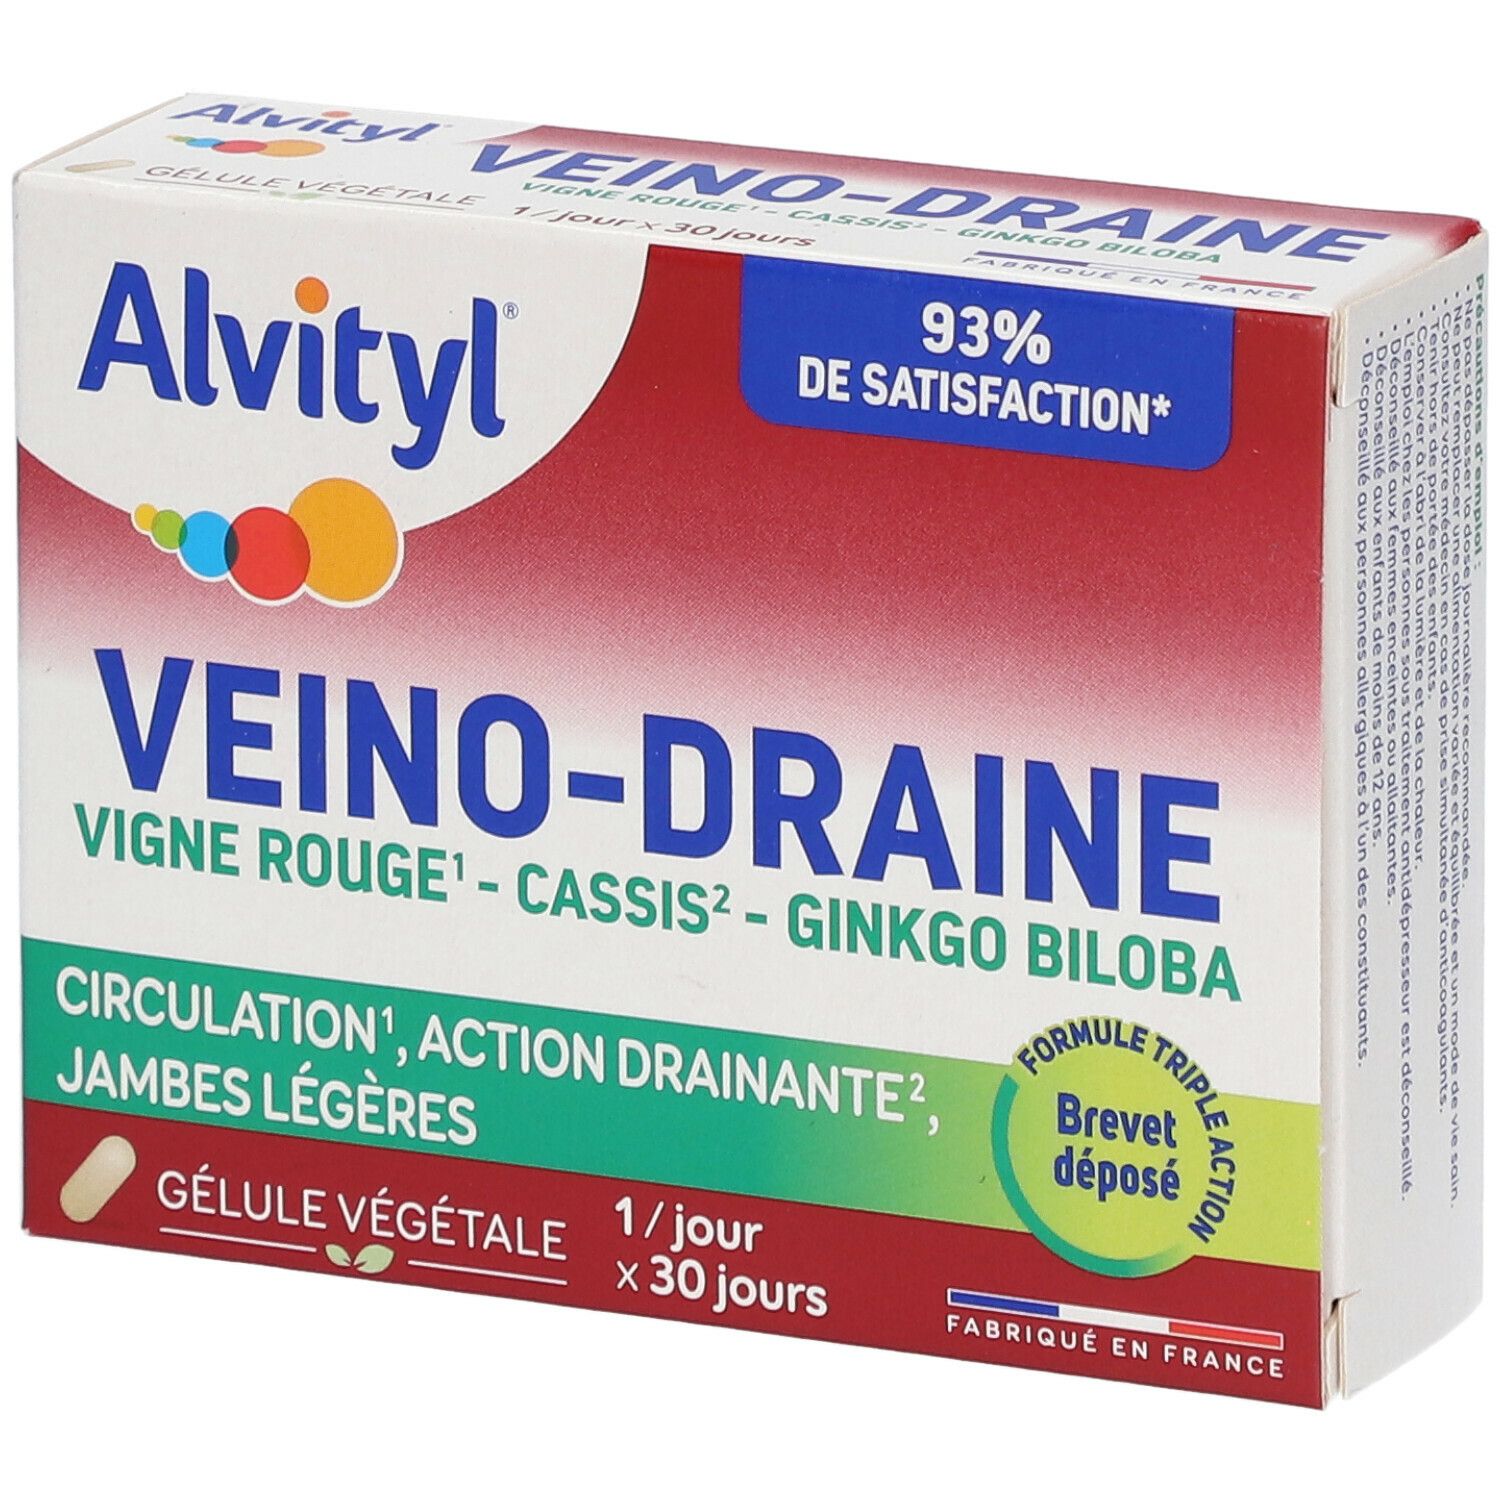 Alvityl® Veino-draine